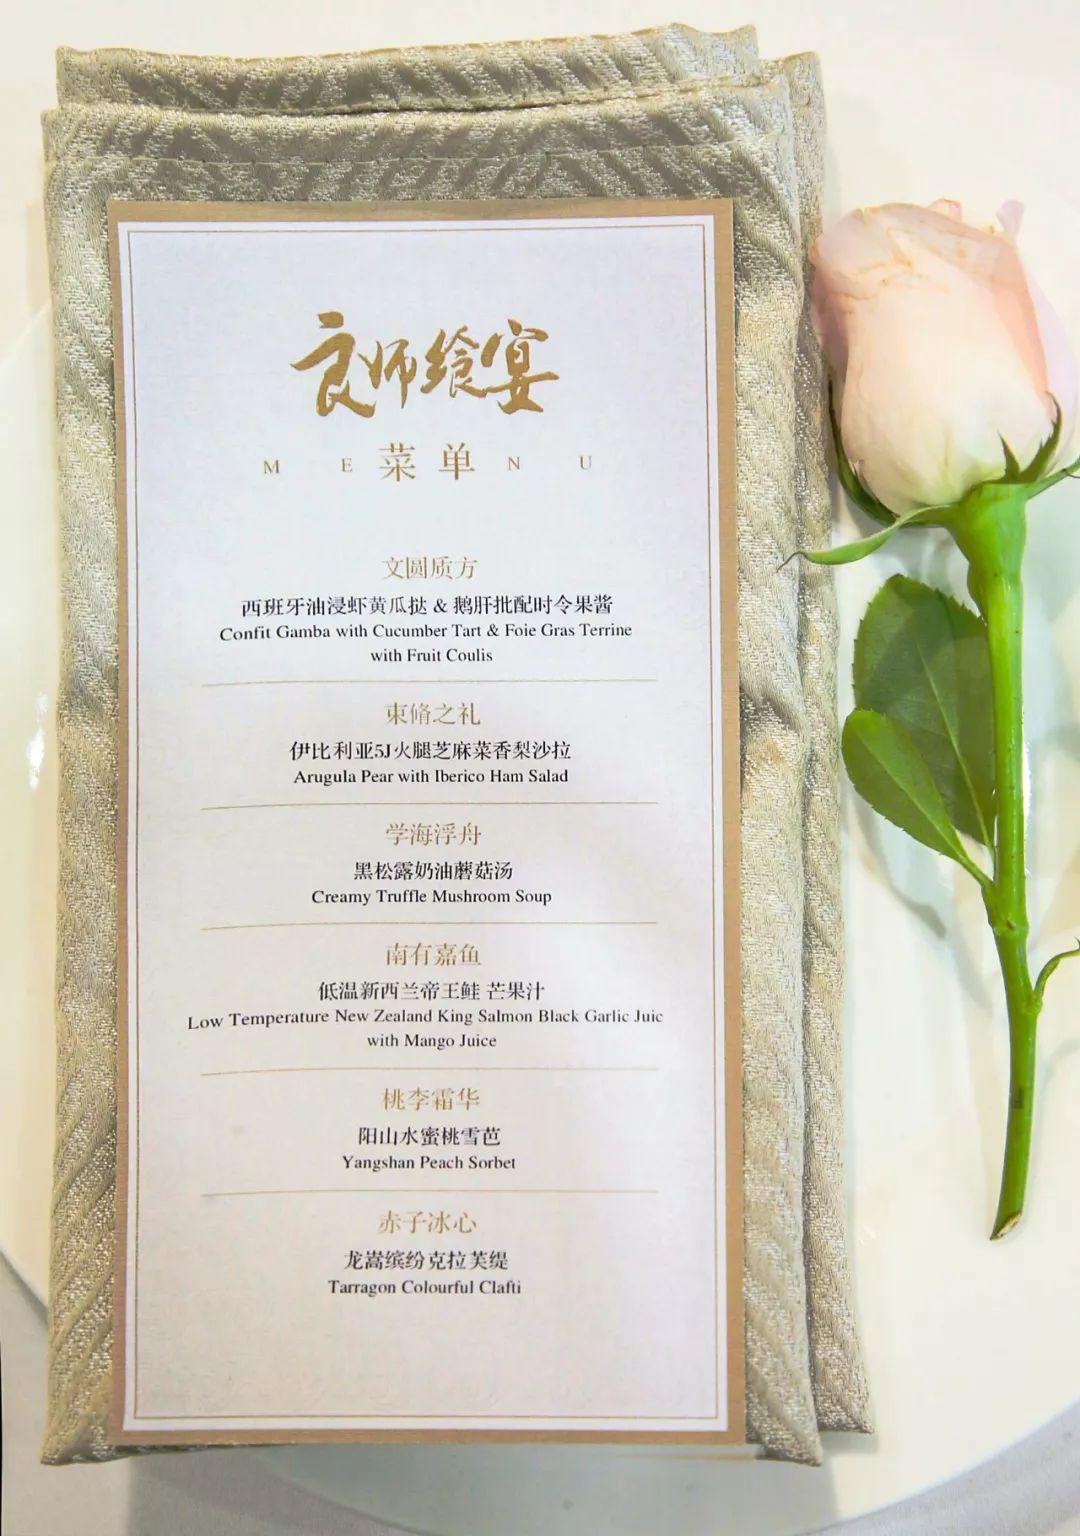 今天，网易有道开了北京第一家米其林三星餐厅！